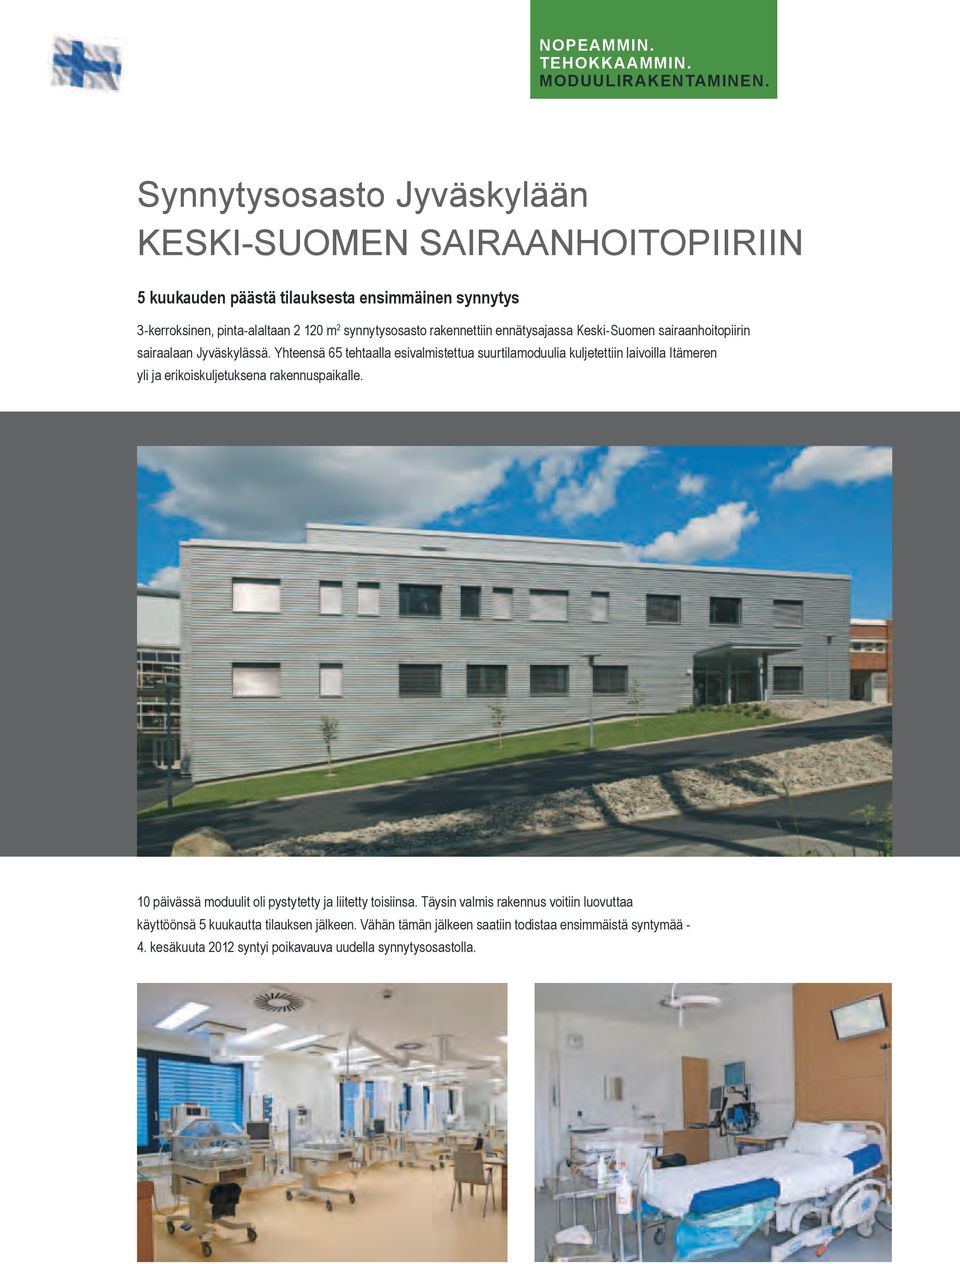 synnytysosasto rakennettiin ennätysajassa Keski-Suomen sairaanhoitopiirin sairaalaan Jyväskylässä.